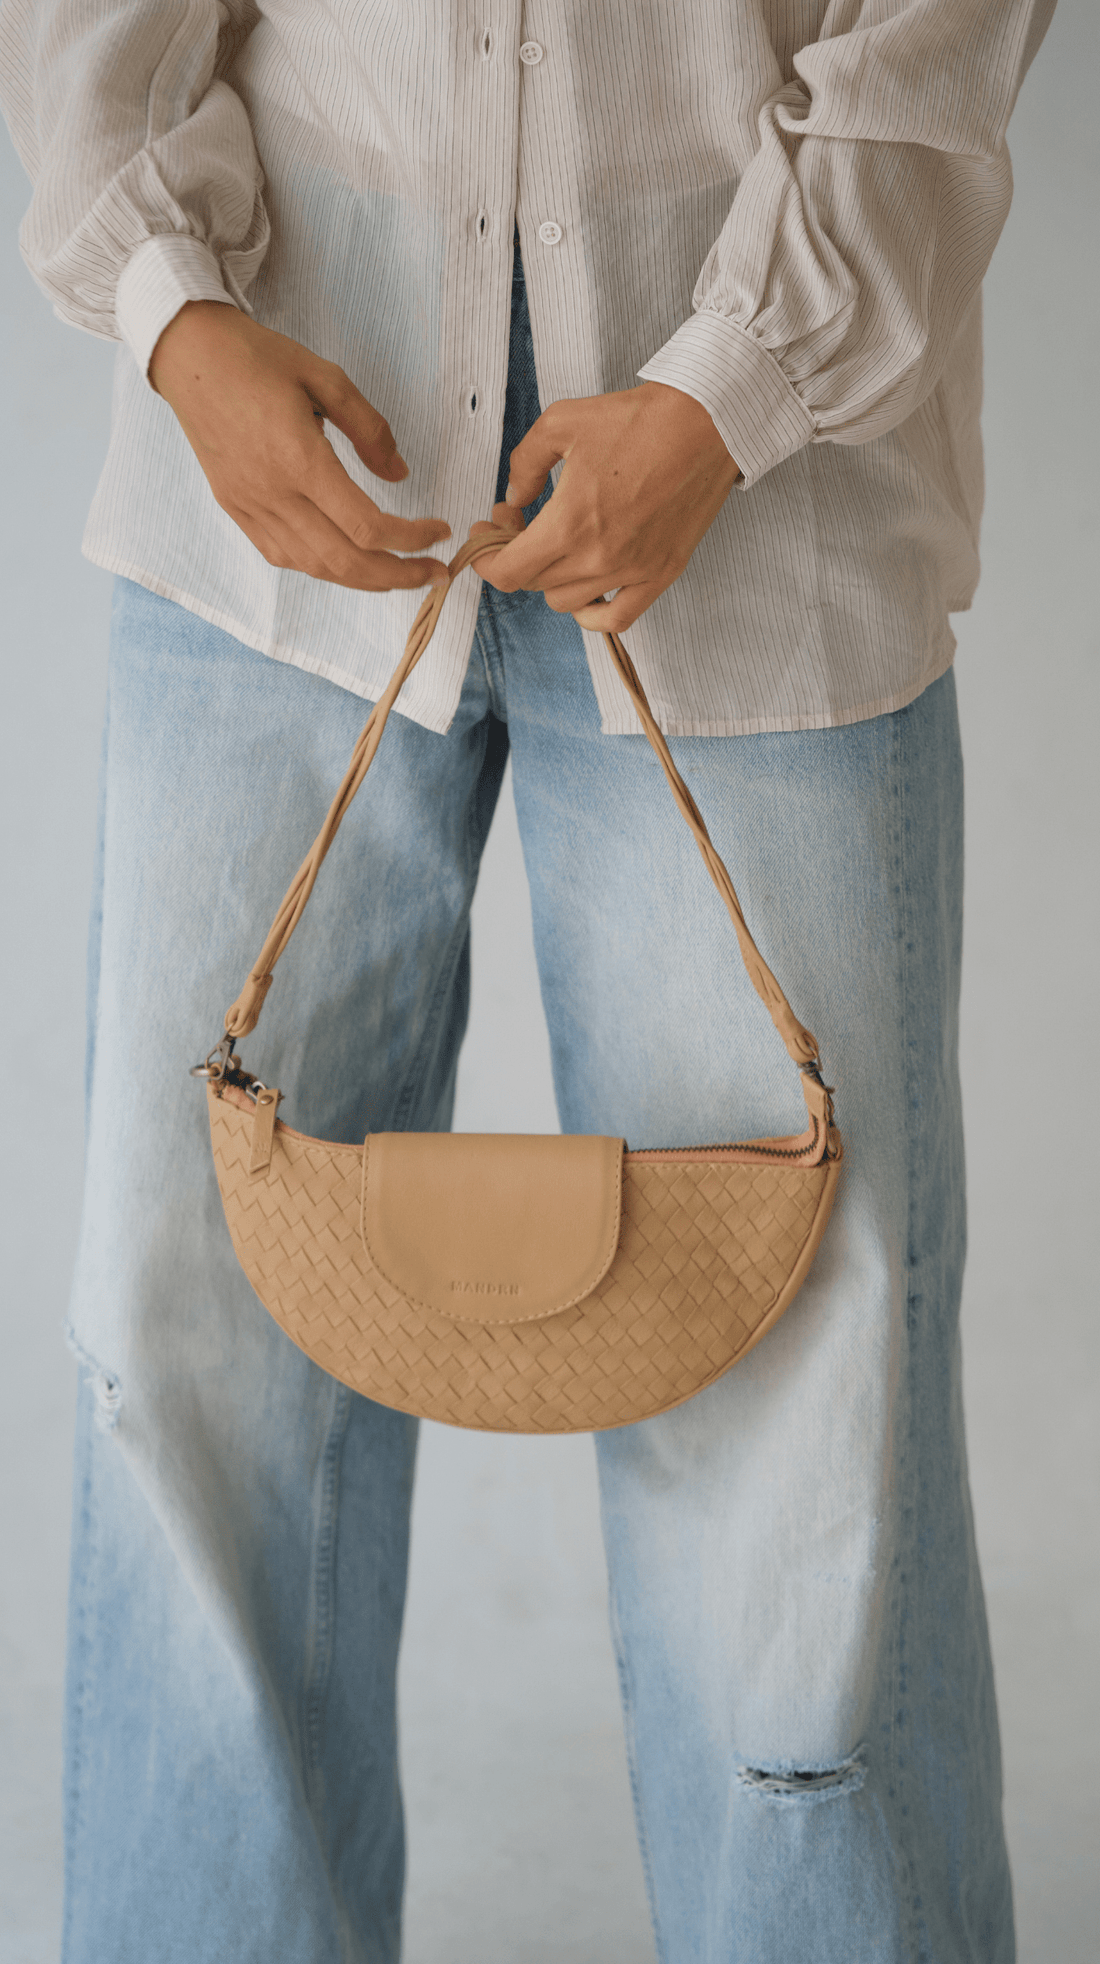 Mandrn Naomi Woven - Sand Bag